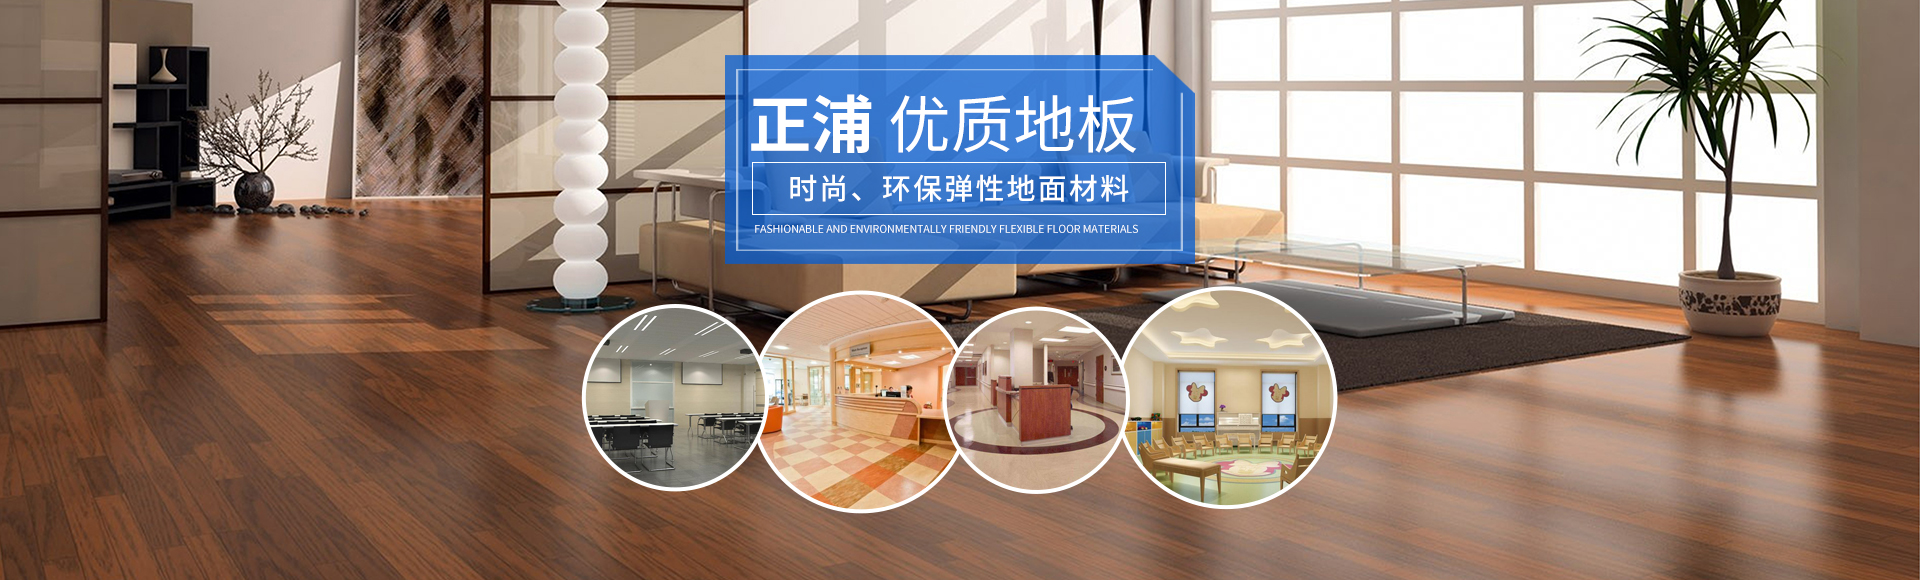 湖南正浦建材有限公司_PVC地板|長沙PVC地板|戶外運動場|塑膠地材